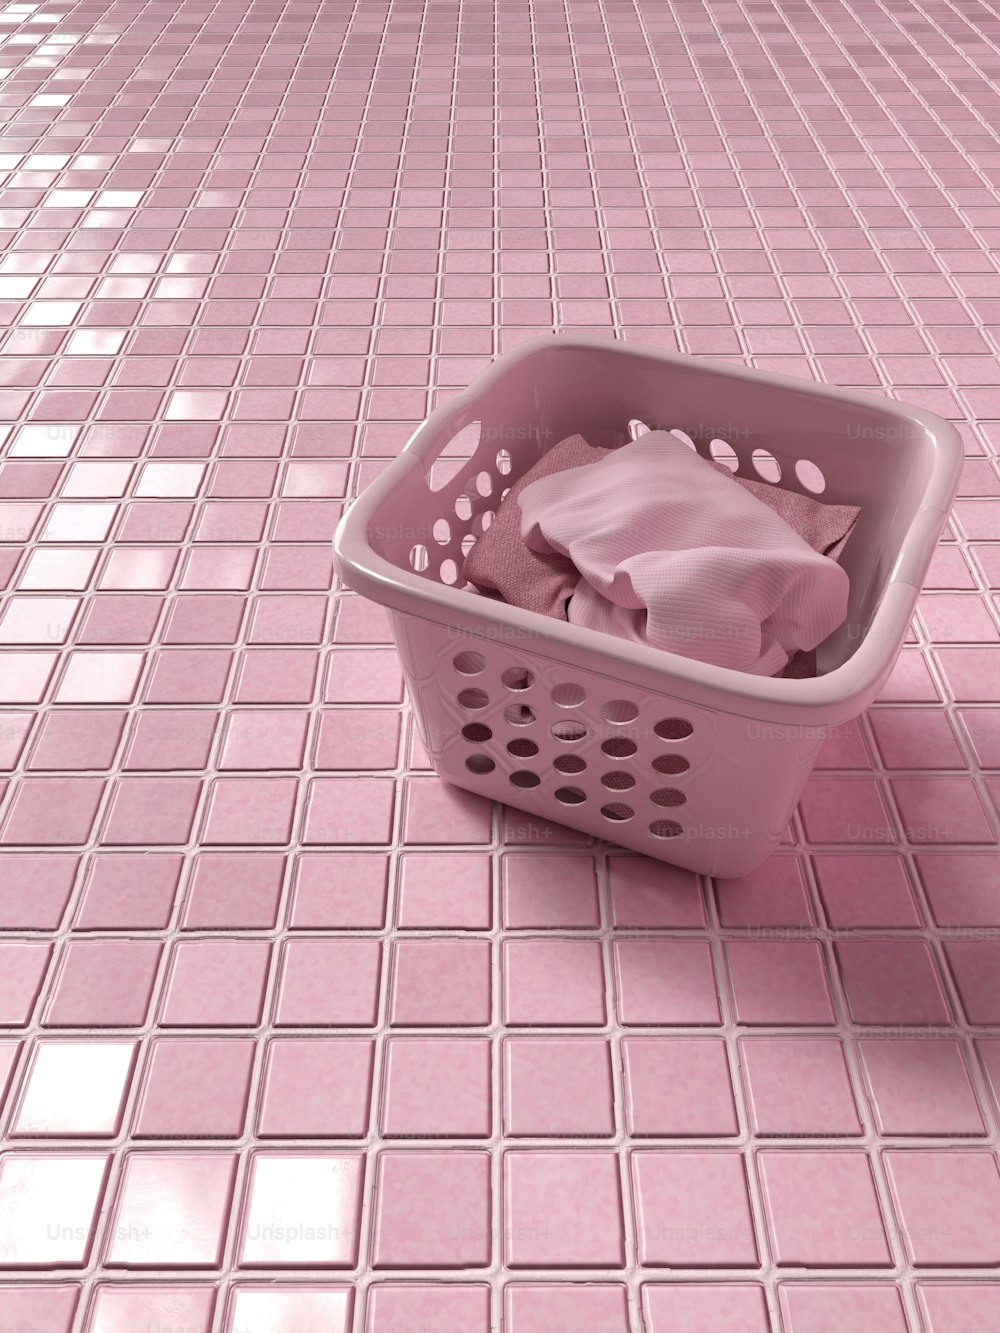 um cesto de roupa suja com um pano rosa nele